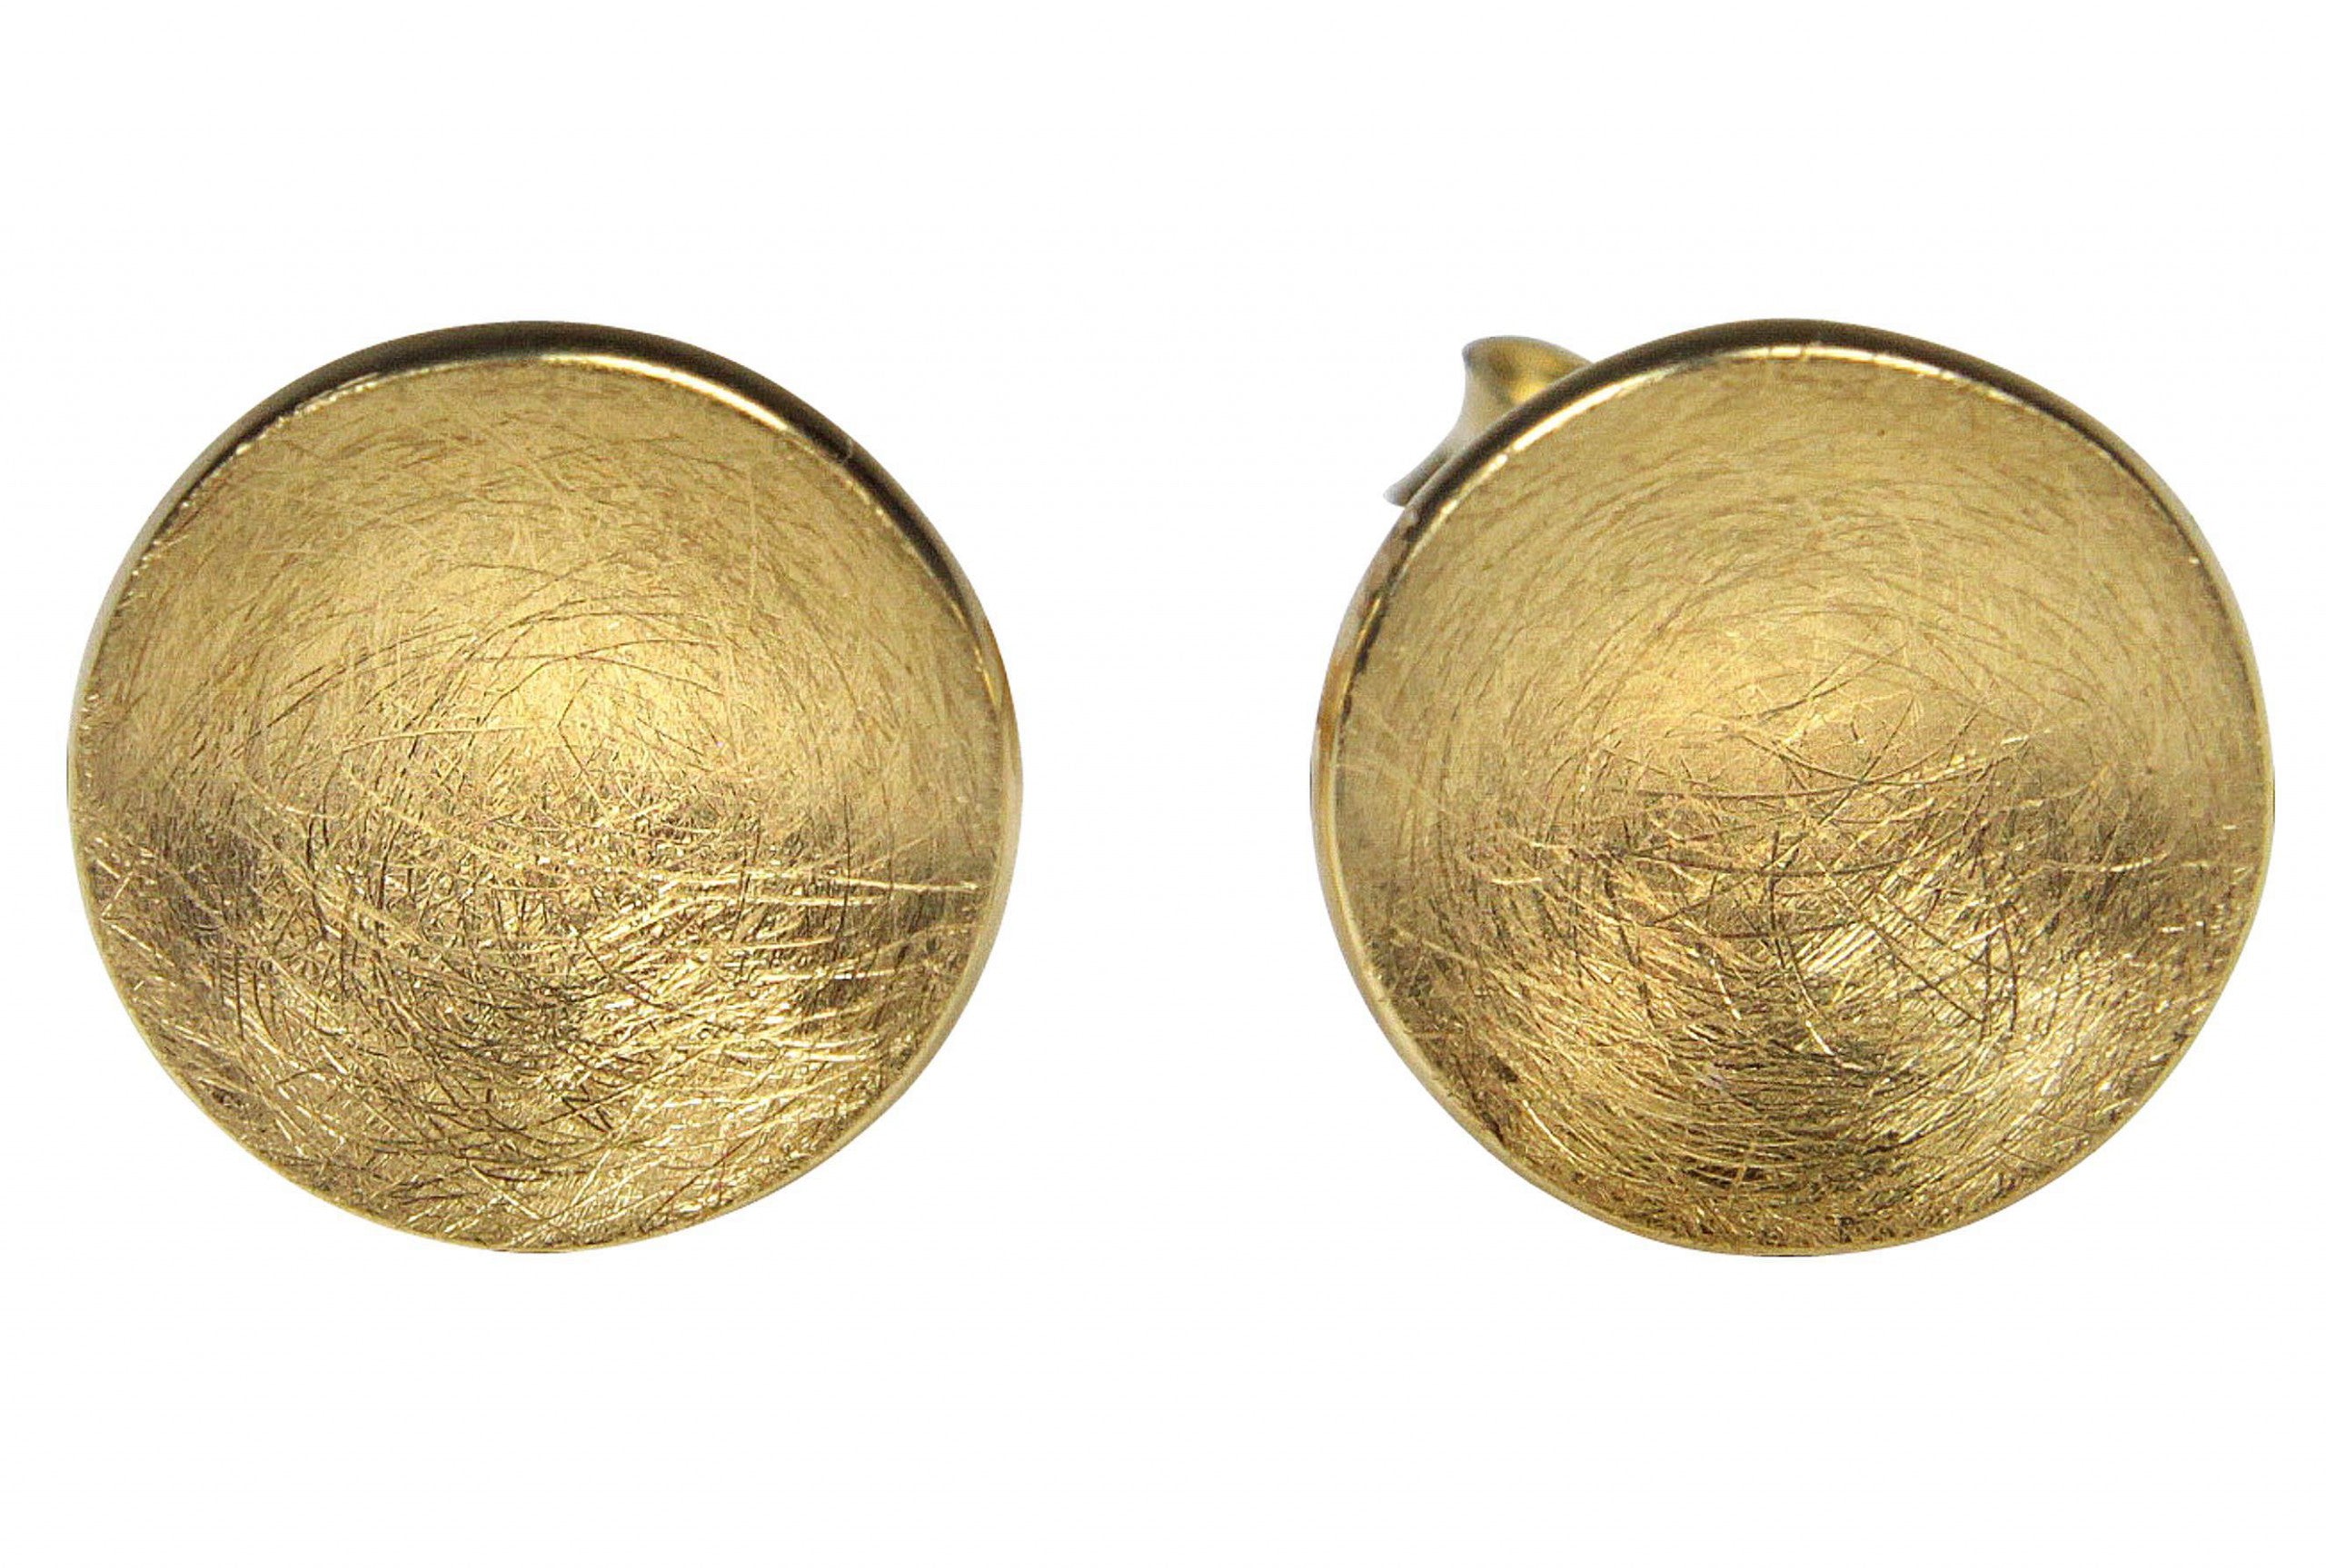 Ohrstecker für Damen in Form eines konkaven Kreises. Die Ohrringe bestehen aus Silber und die Oberfläche ist vergoldet.